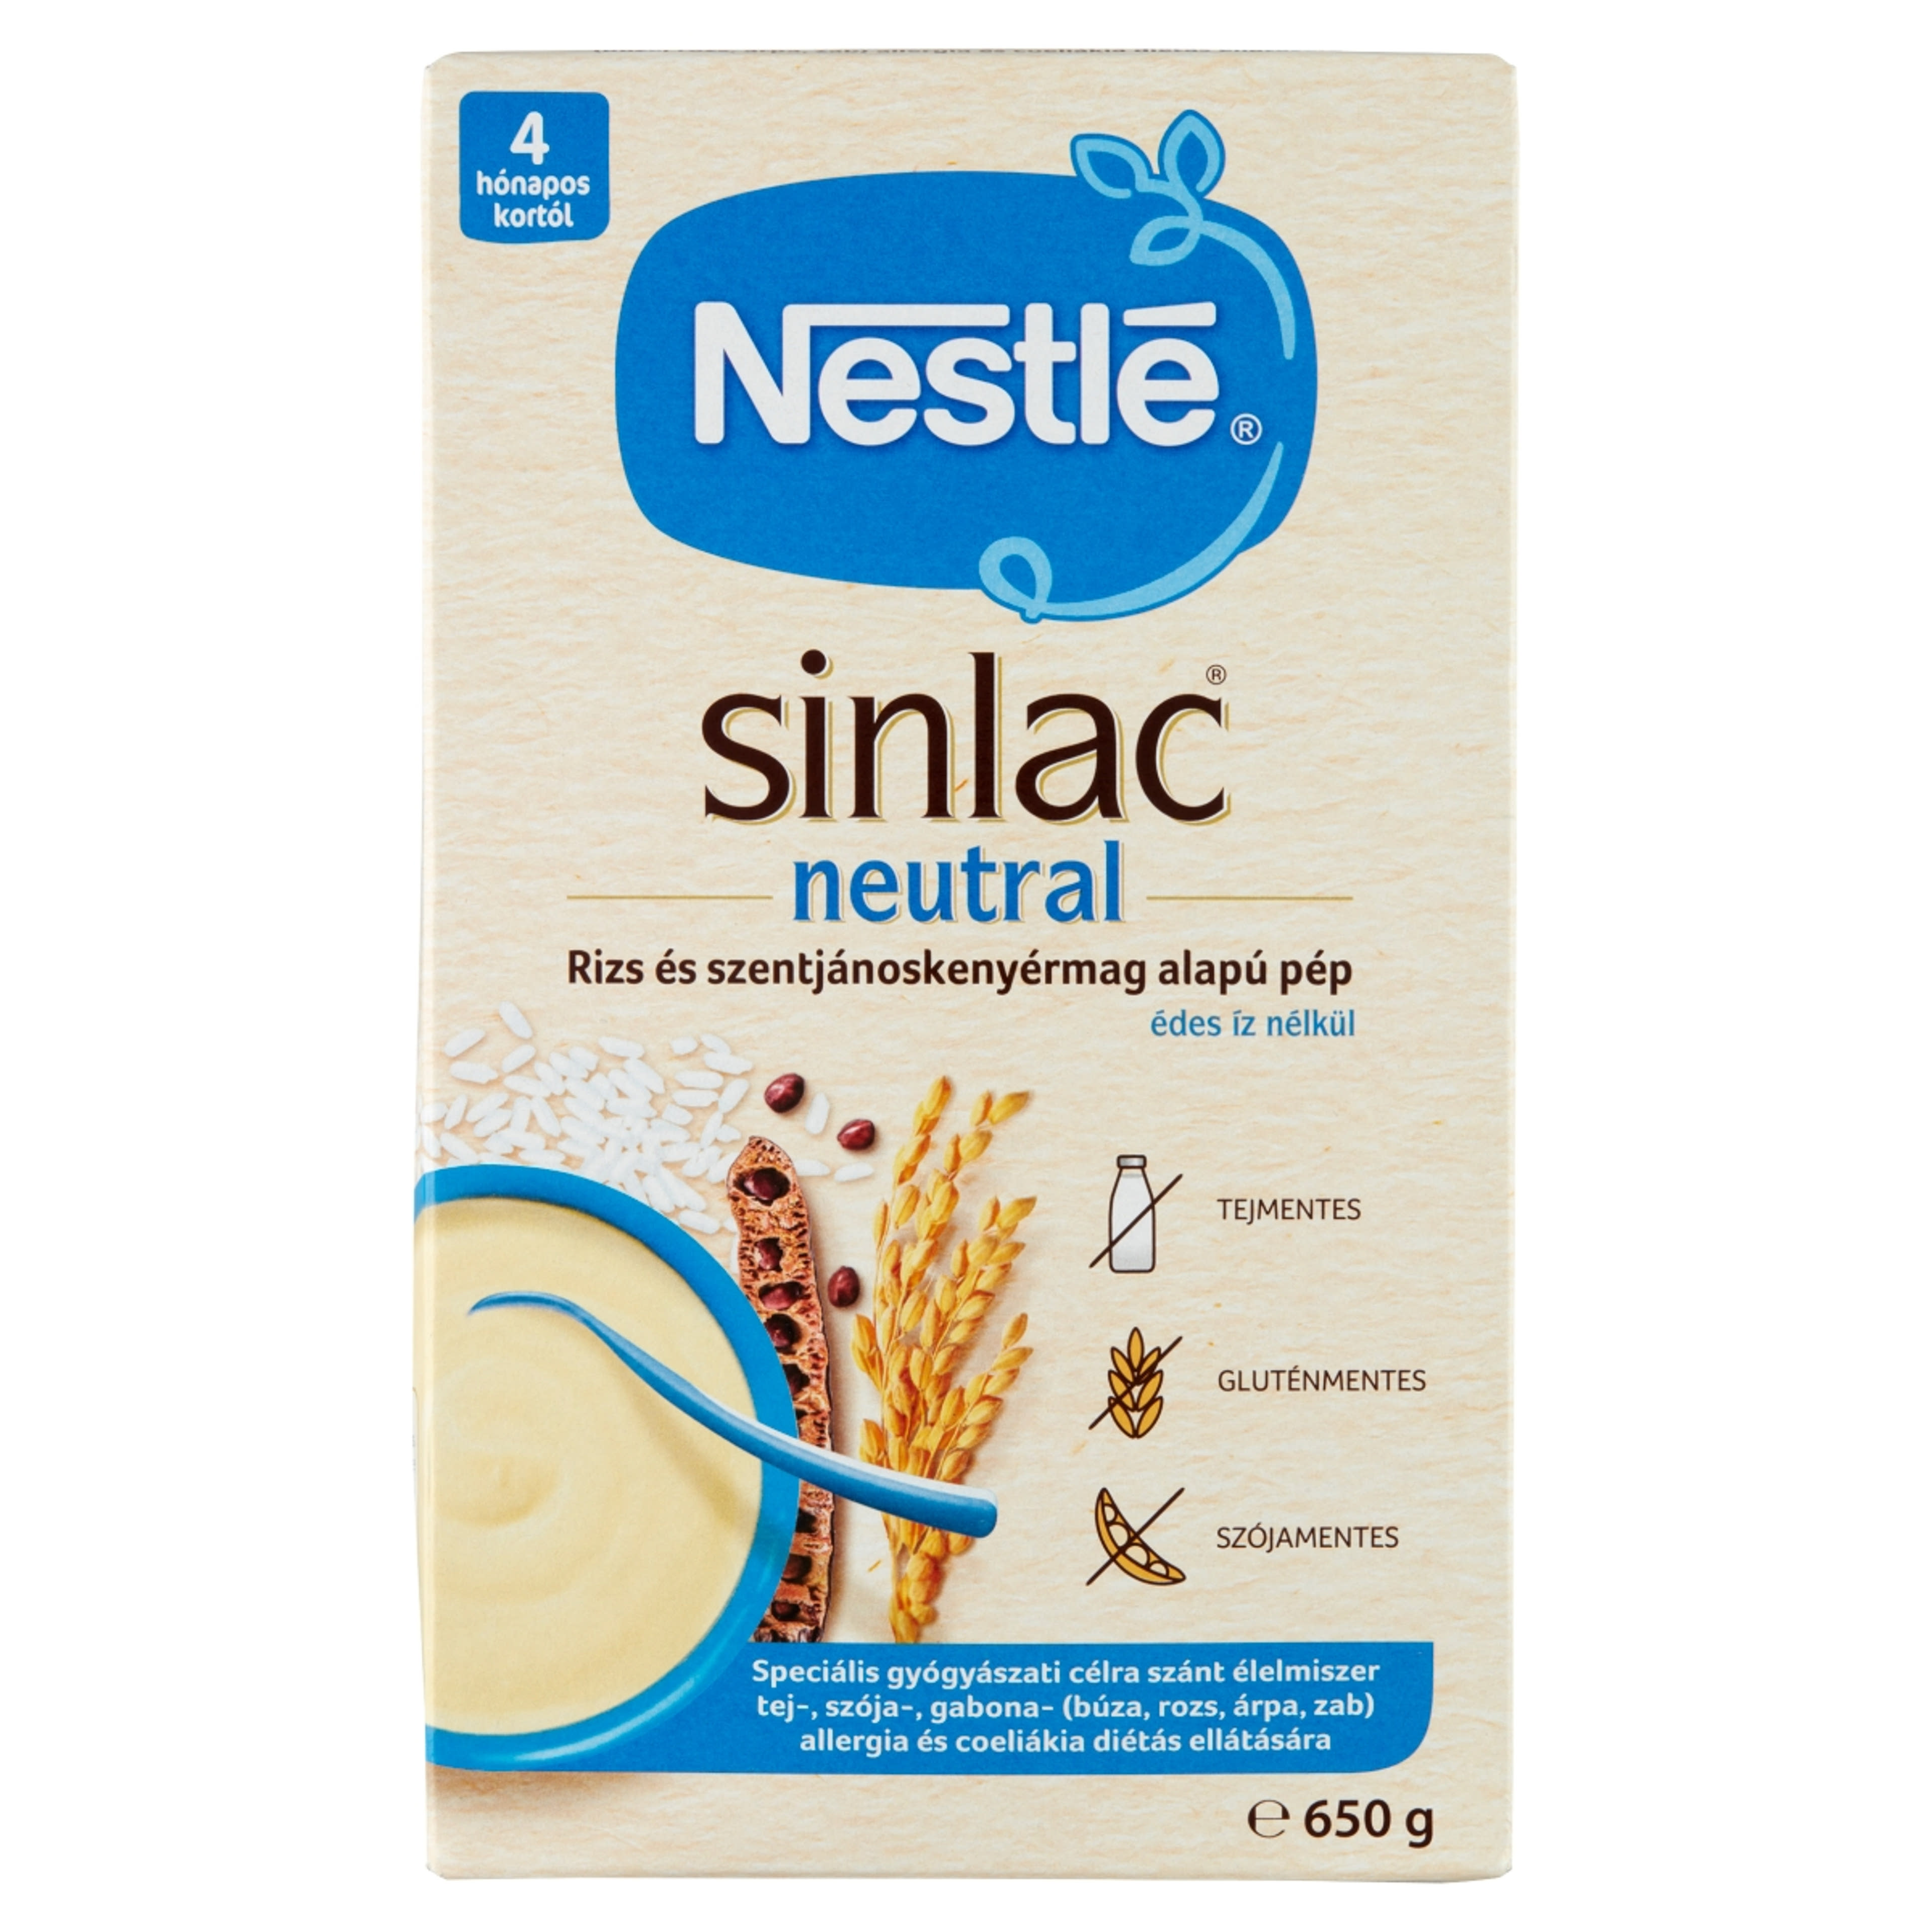 Nestle Sinlac Neutral Rizs-és szentjároskenyérmag alapú pép 4 hónapos kortól - 650g